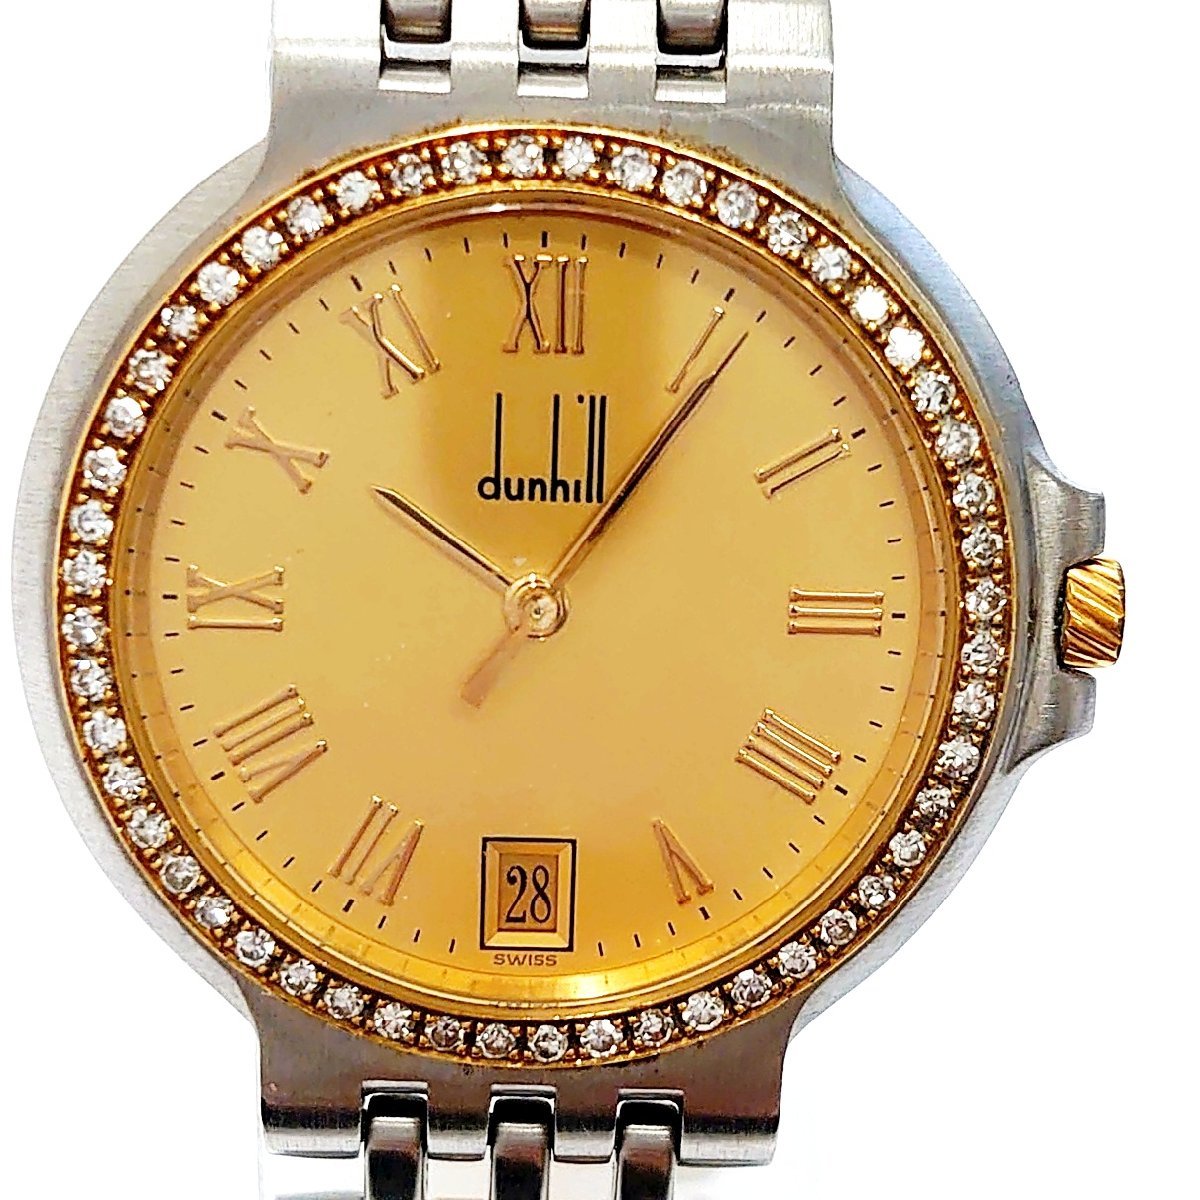 人気商品 【dunhill】ダンヒル 腕時計 エリート ダイヤモンド ベゼル